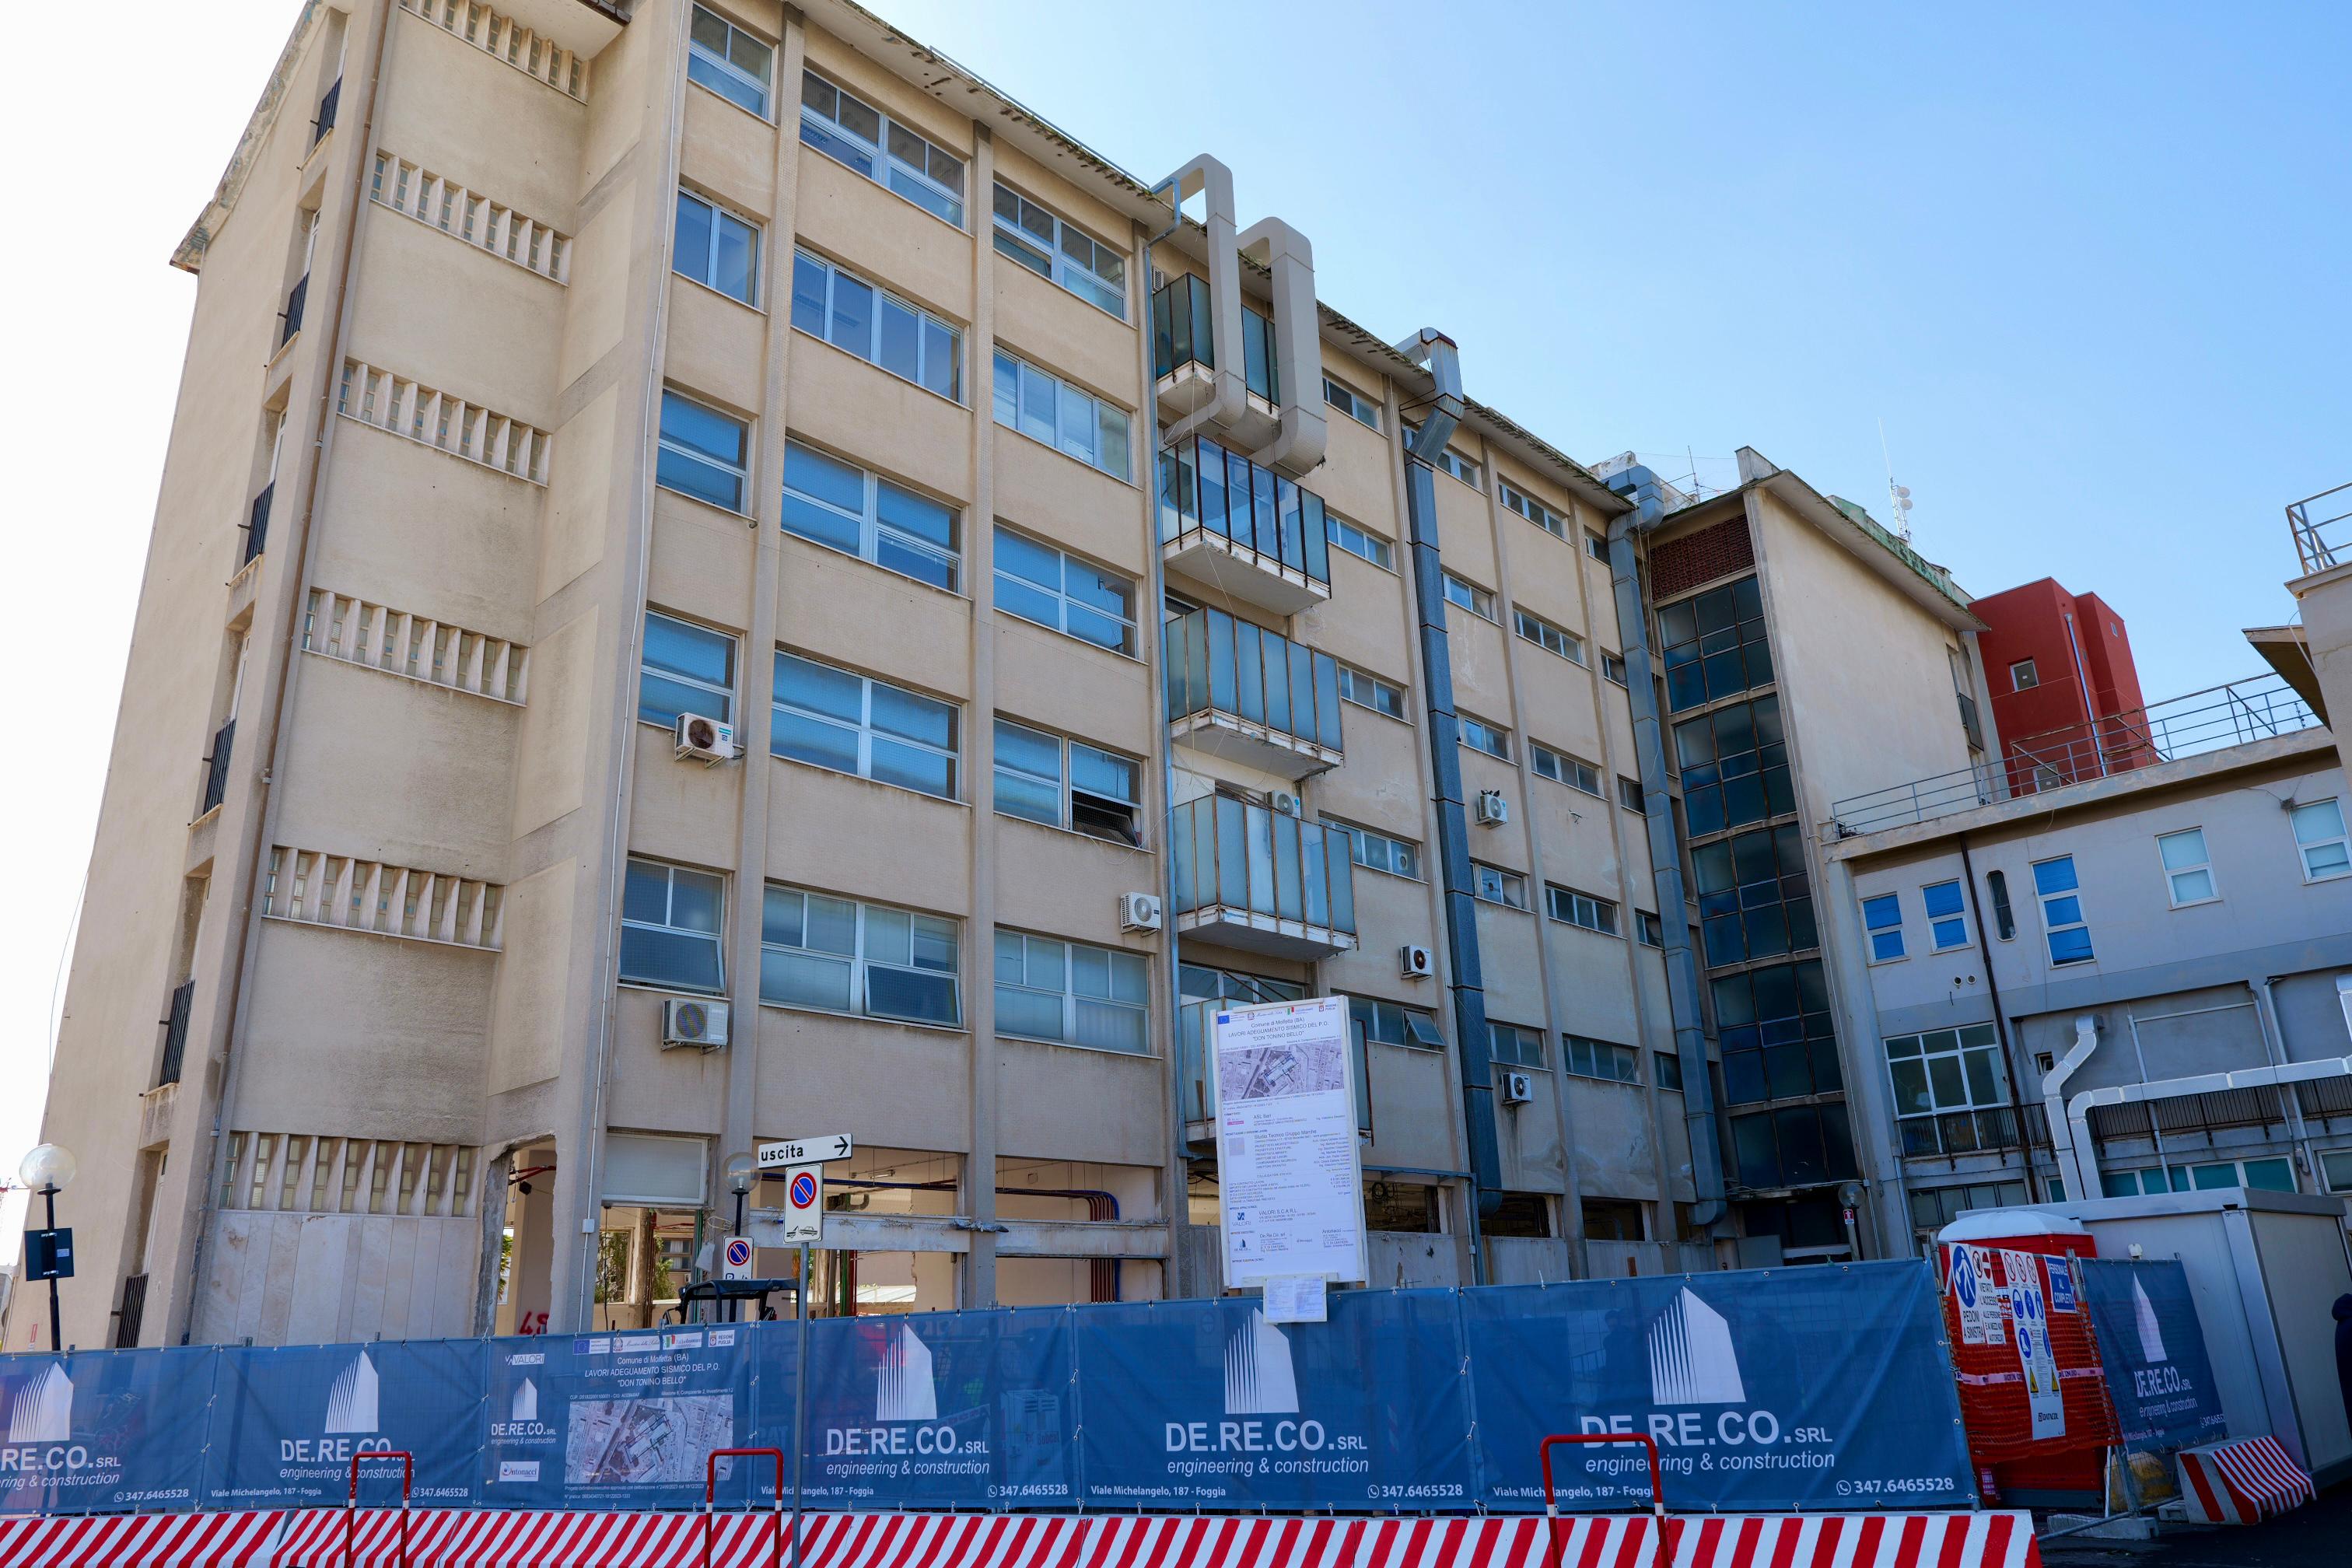 Galleria PNRR-PNC, adeguamento antisismico ed efficientamento energetico: Asl Bari dà il via a lavori da 7,3 milioni all’Ospedale di Molfetta - Diapositiva 4 di 10